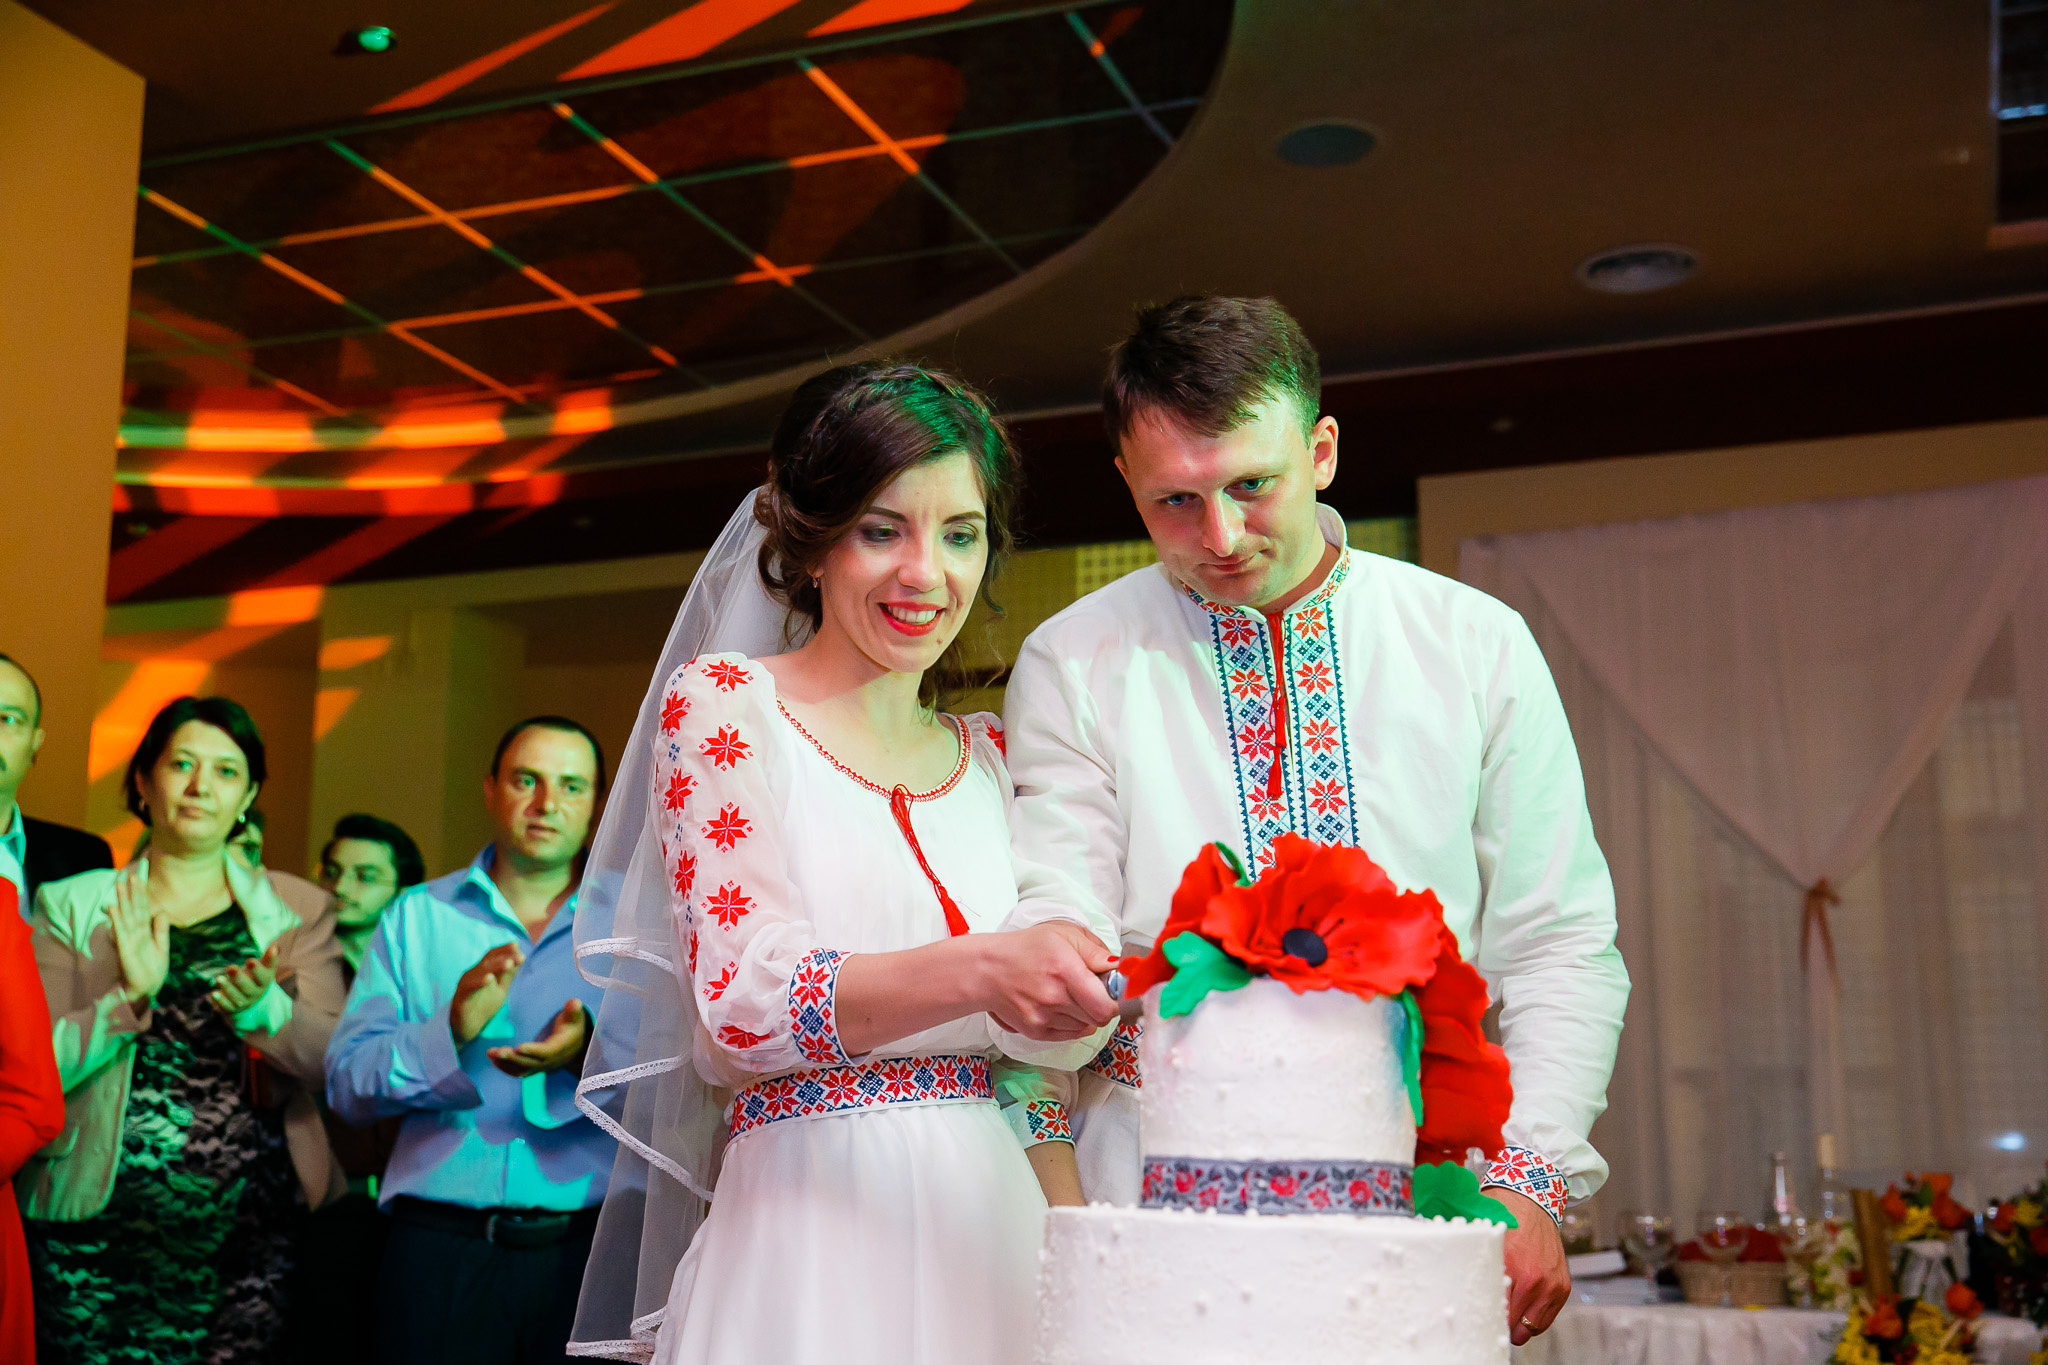 Nuntă tradițională Elisabeta și Alexandru fotograf profesionist nunta Iasi www.paulpadurariu.ro © 2018 Paul Padurariu fotograf de nunta Iasi tortul mirilor 3